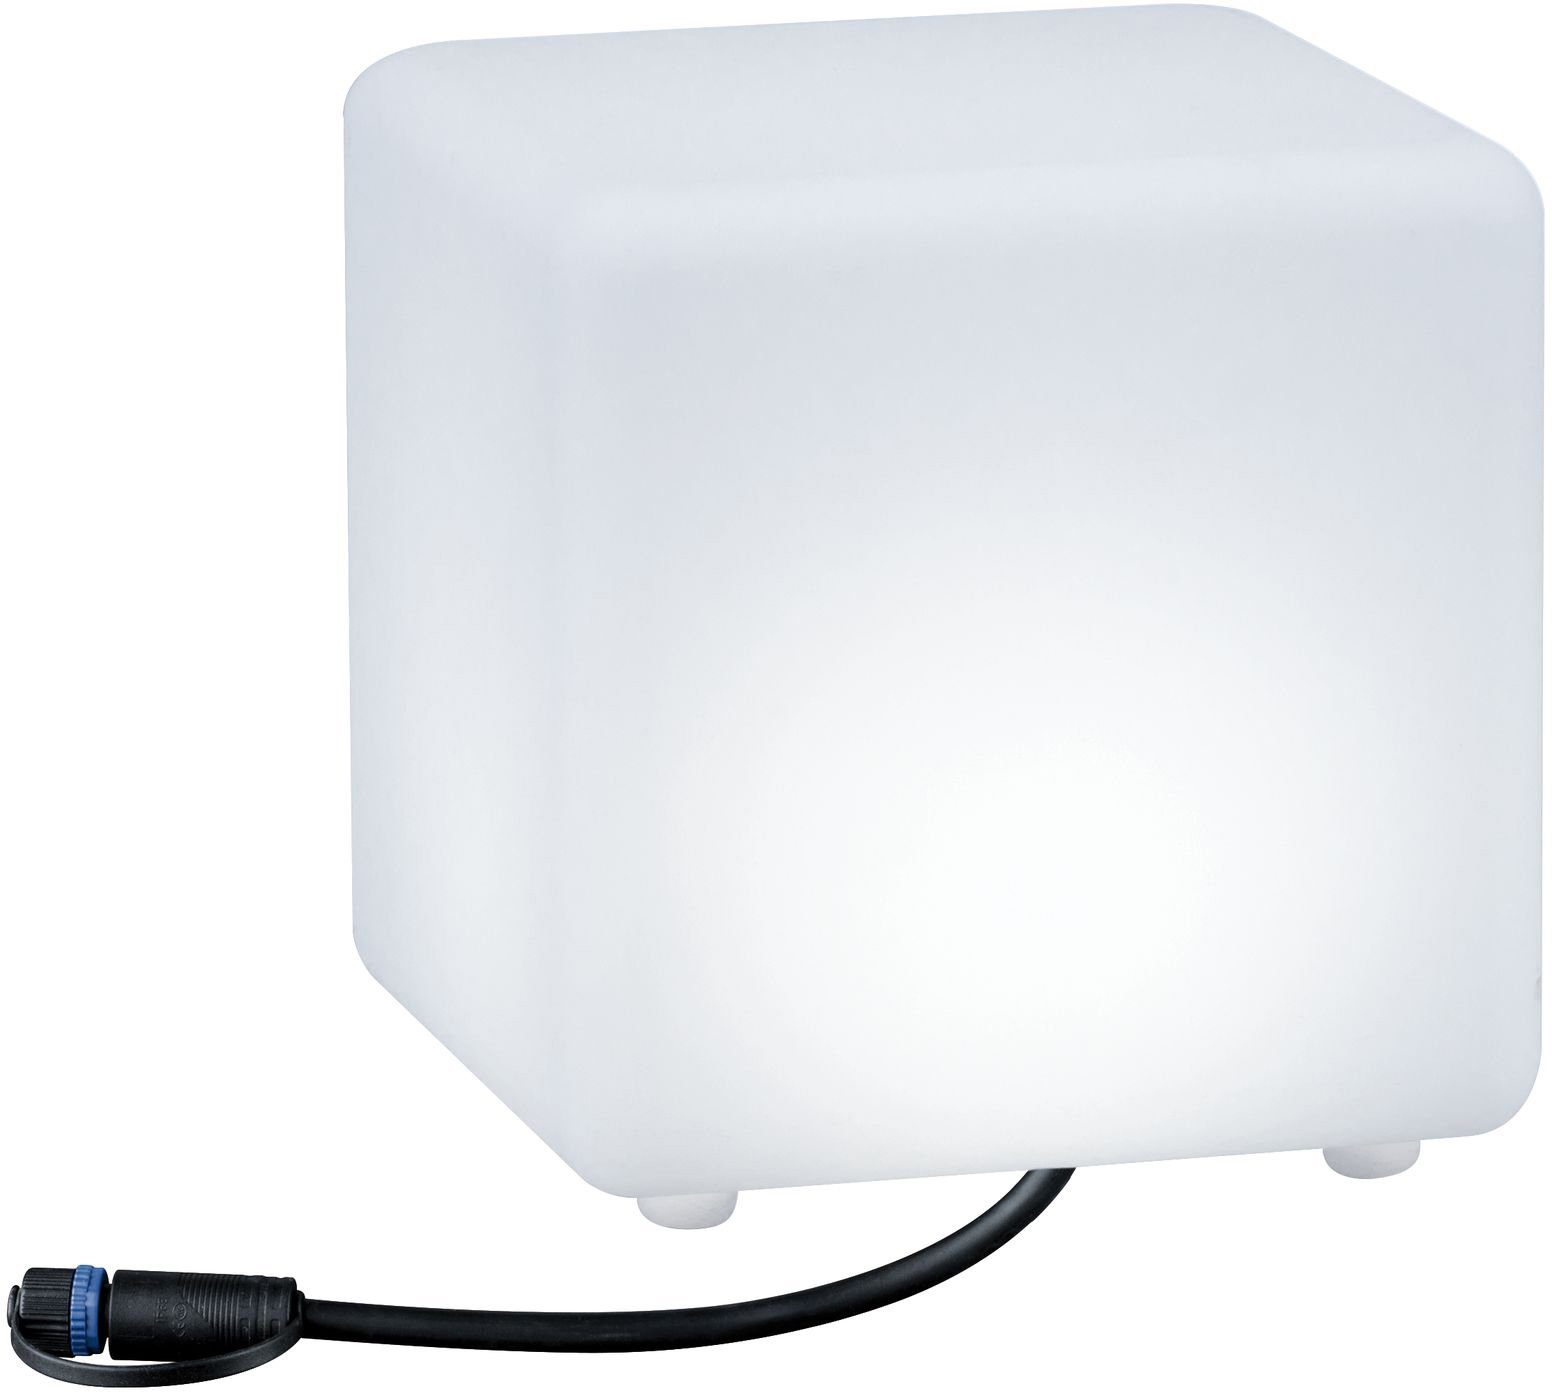 & IP67 Shine, Warmweiß, Paulmann LED RGBW ZigBee Shine, Plug integriert, Würfel fest Plug 24V & LED